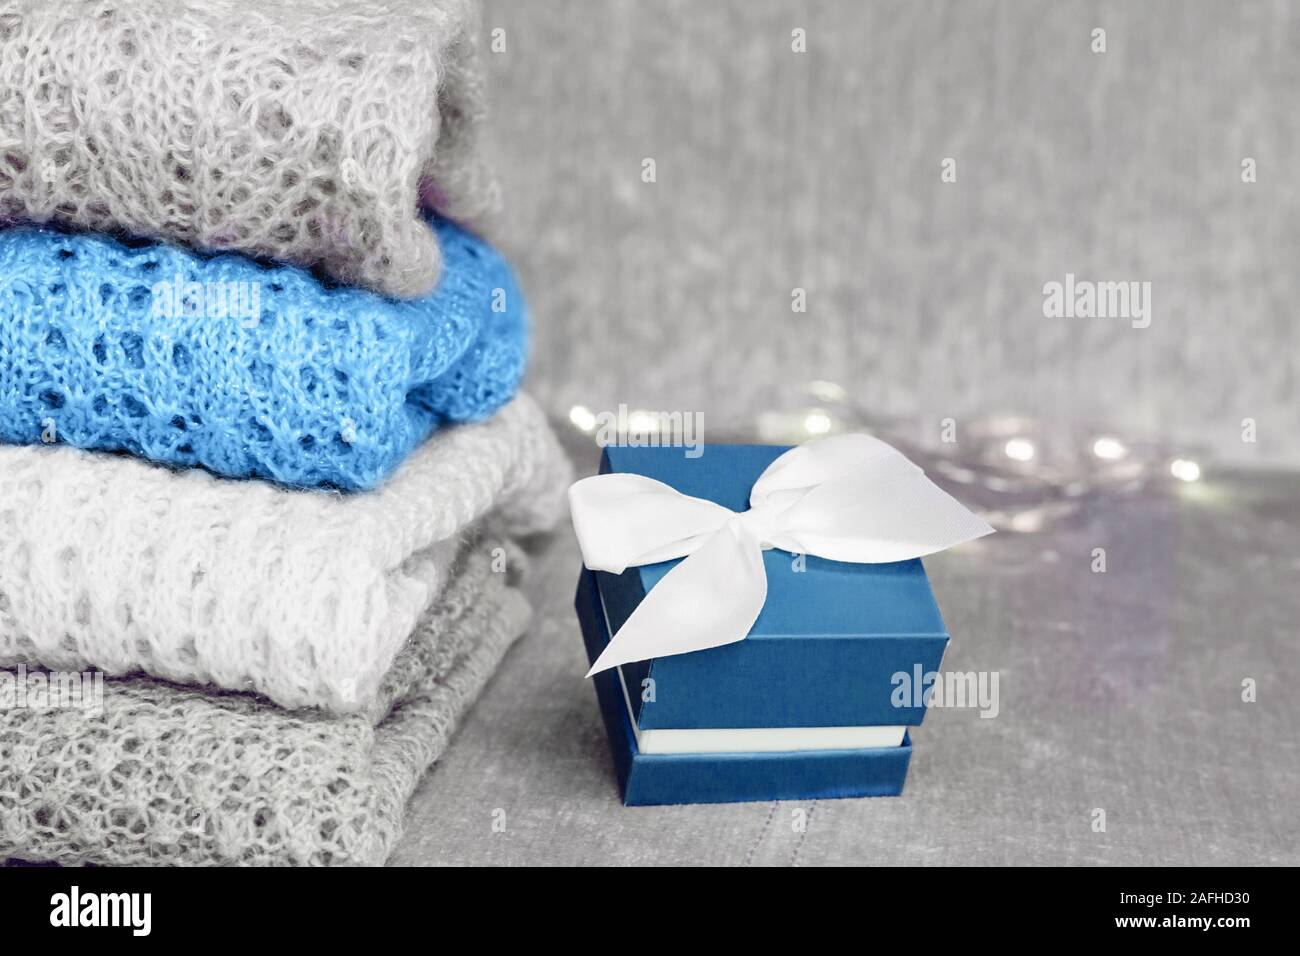 Stilvolle gestrickt, pastellfarbenen Pullover im Stapel und trendigen blau  gefärbten vorhanden Feld mit weißem satin schleife auf Samtigen Stoff  Hintergrund gefaltet. Winter Stockfotografie - Alamy